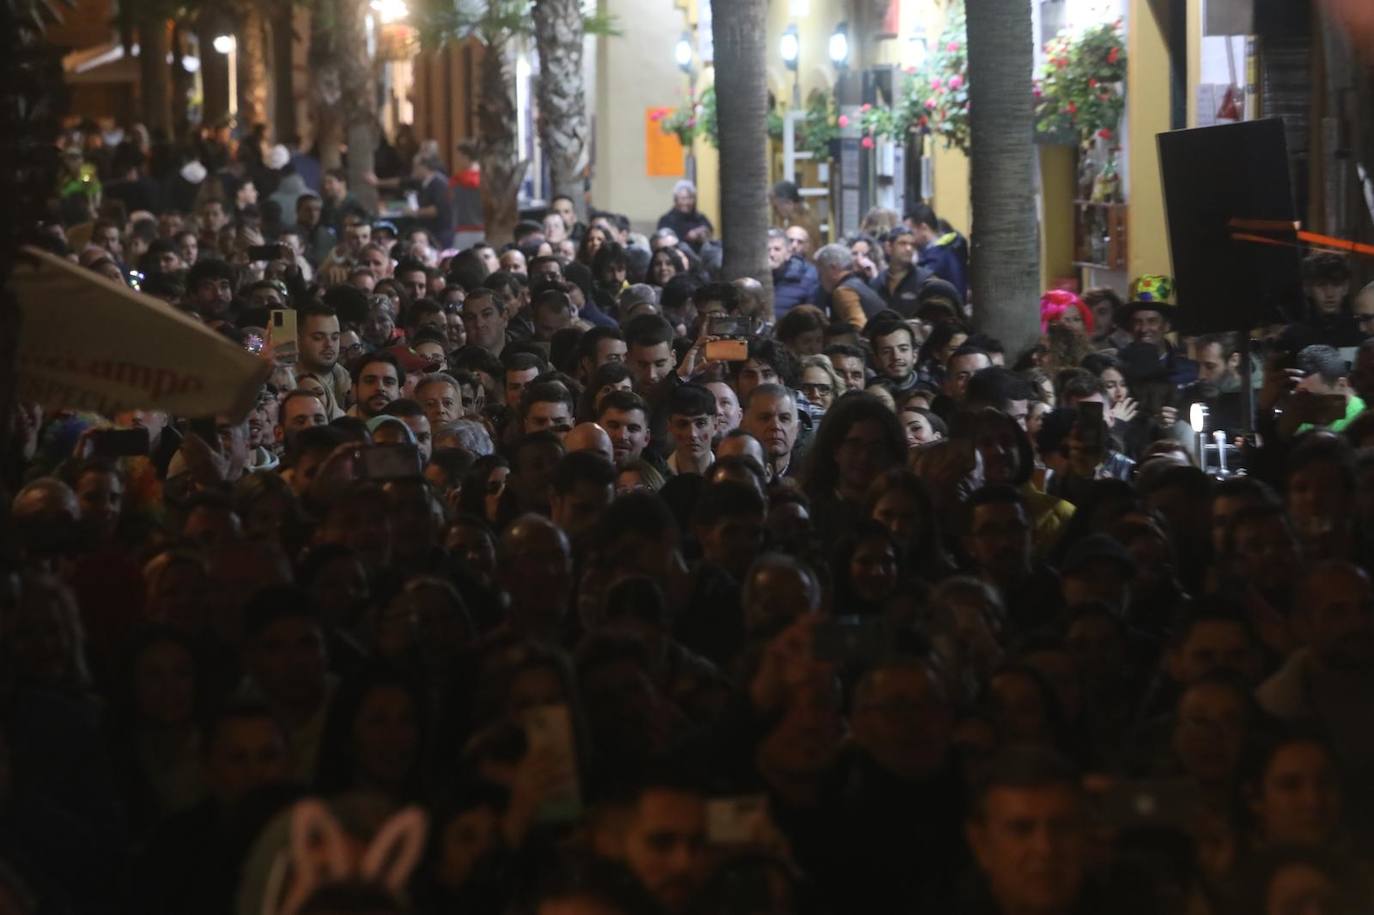 Las imágenes del jueves de Carnaval en Cádiz